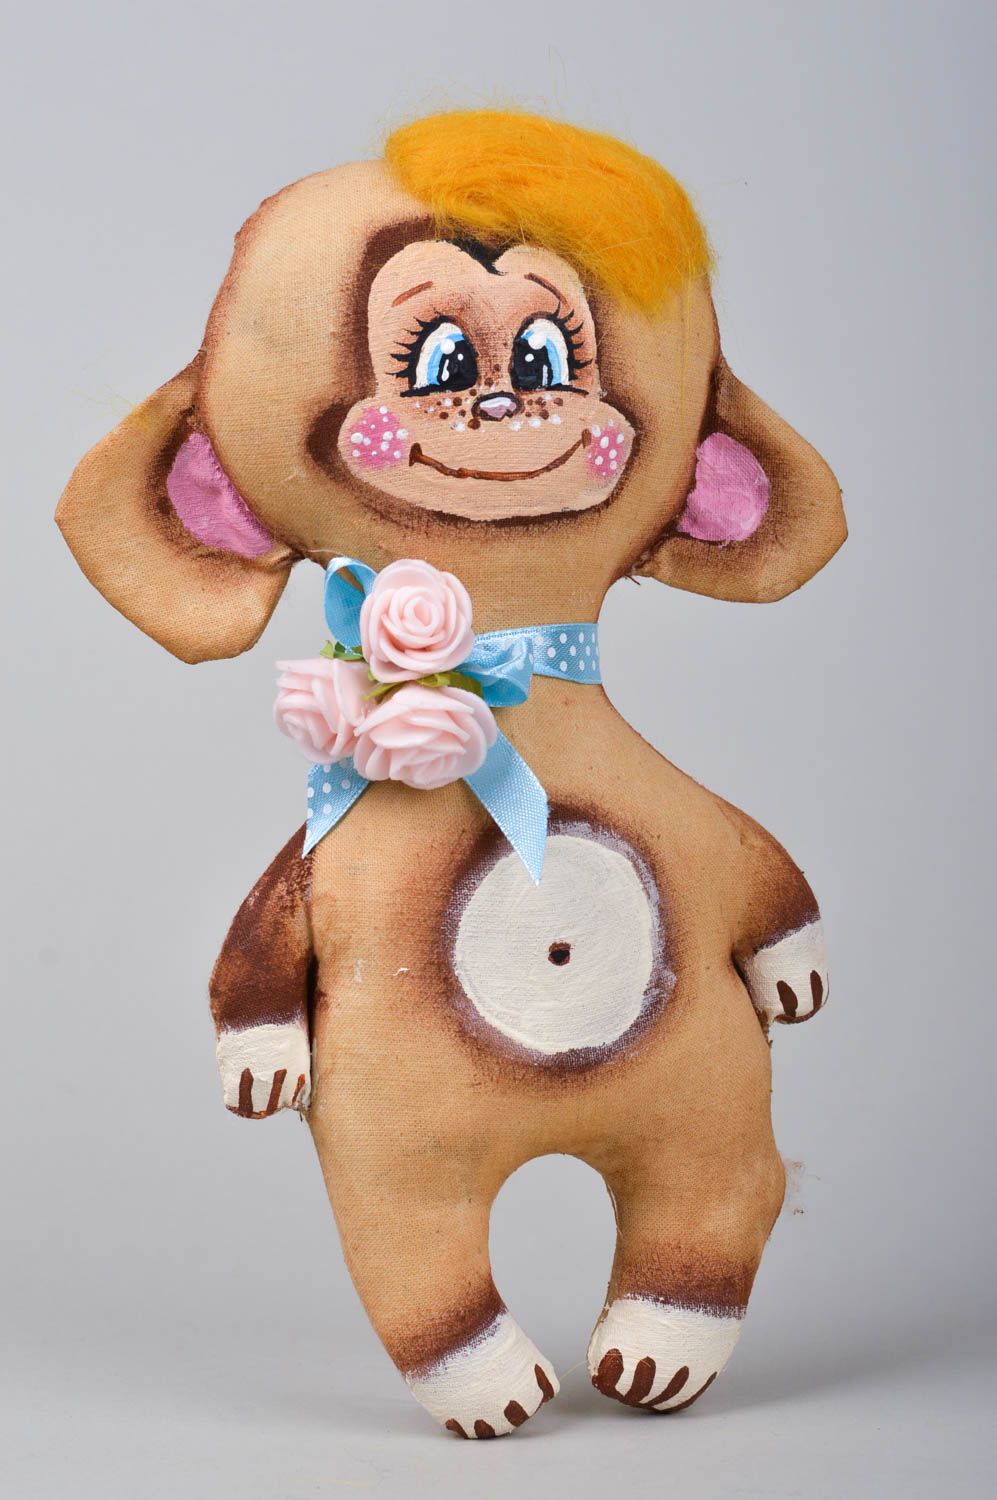 Textil Spielzeug handgemachtes kleines Kuscheltier originelles Geschenk Affe foto 1